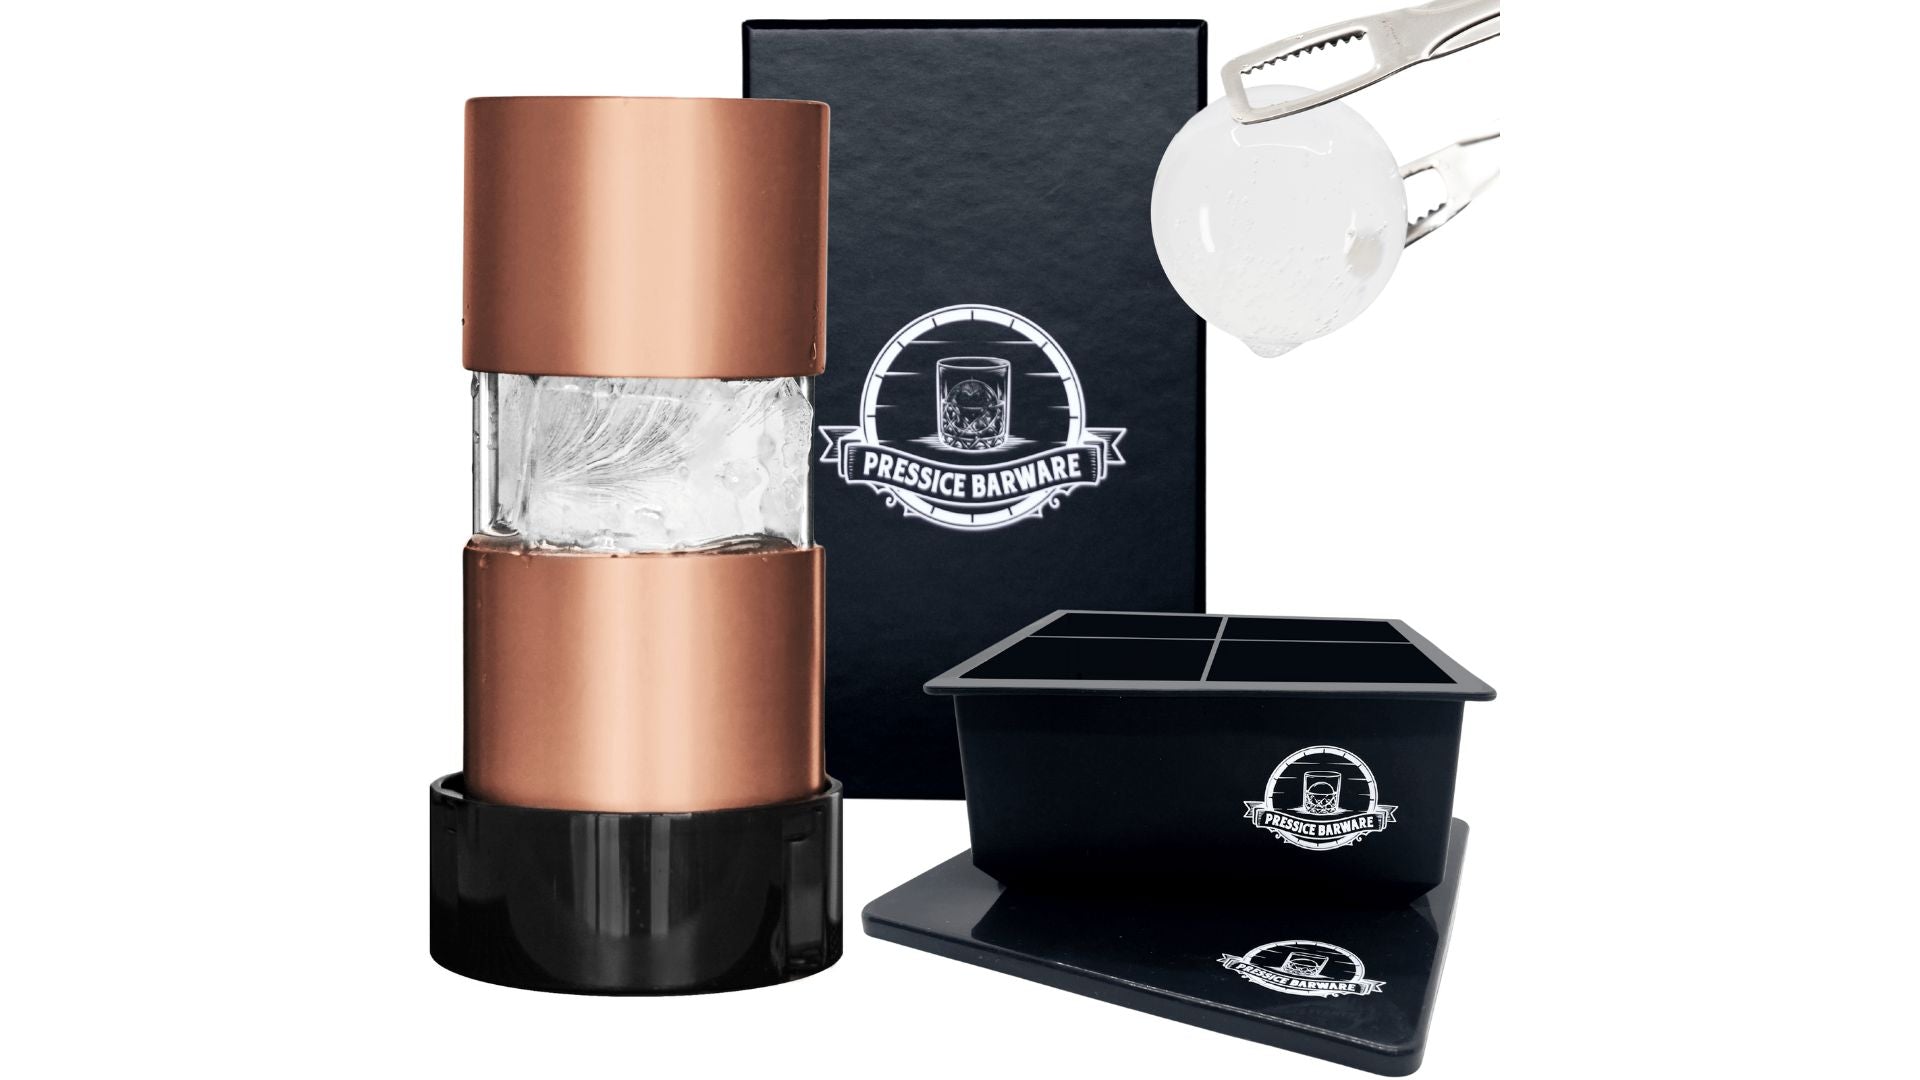 Copper Vs. Aluminum Ice Ball Press – Pressice Barware